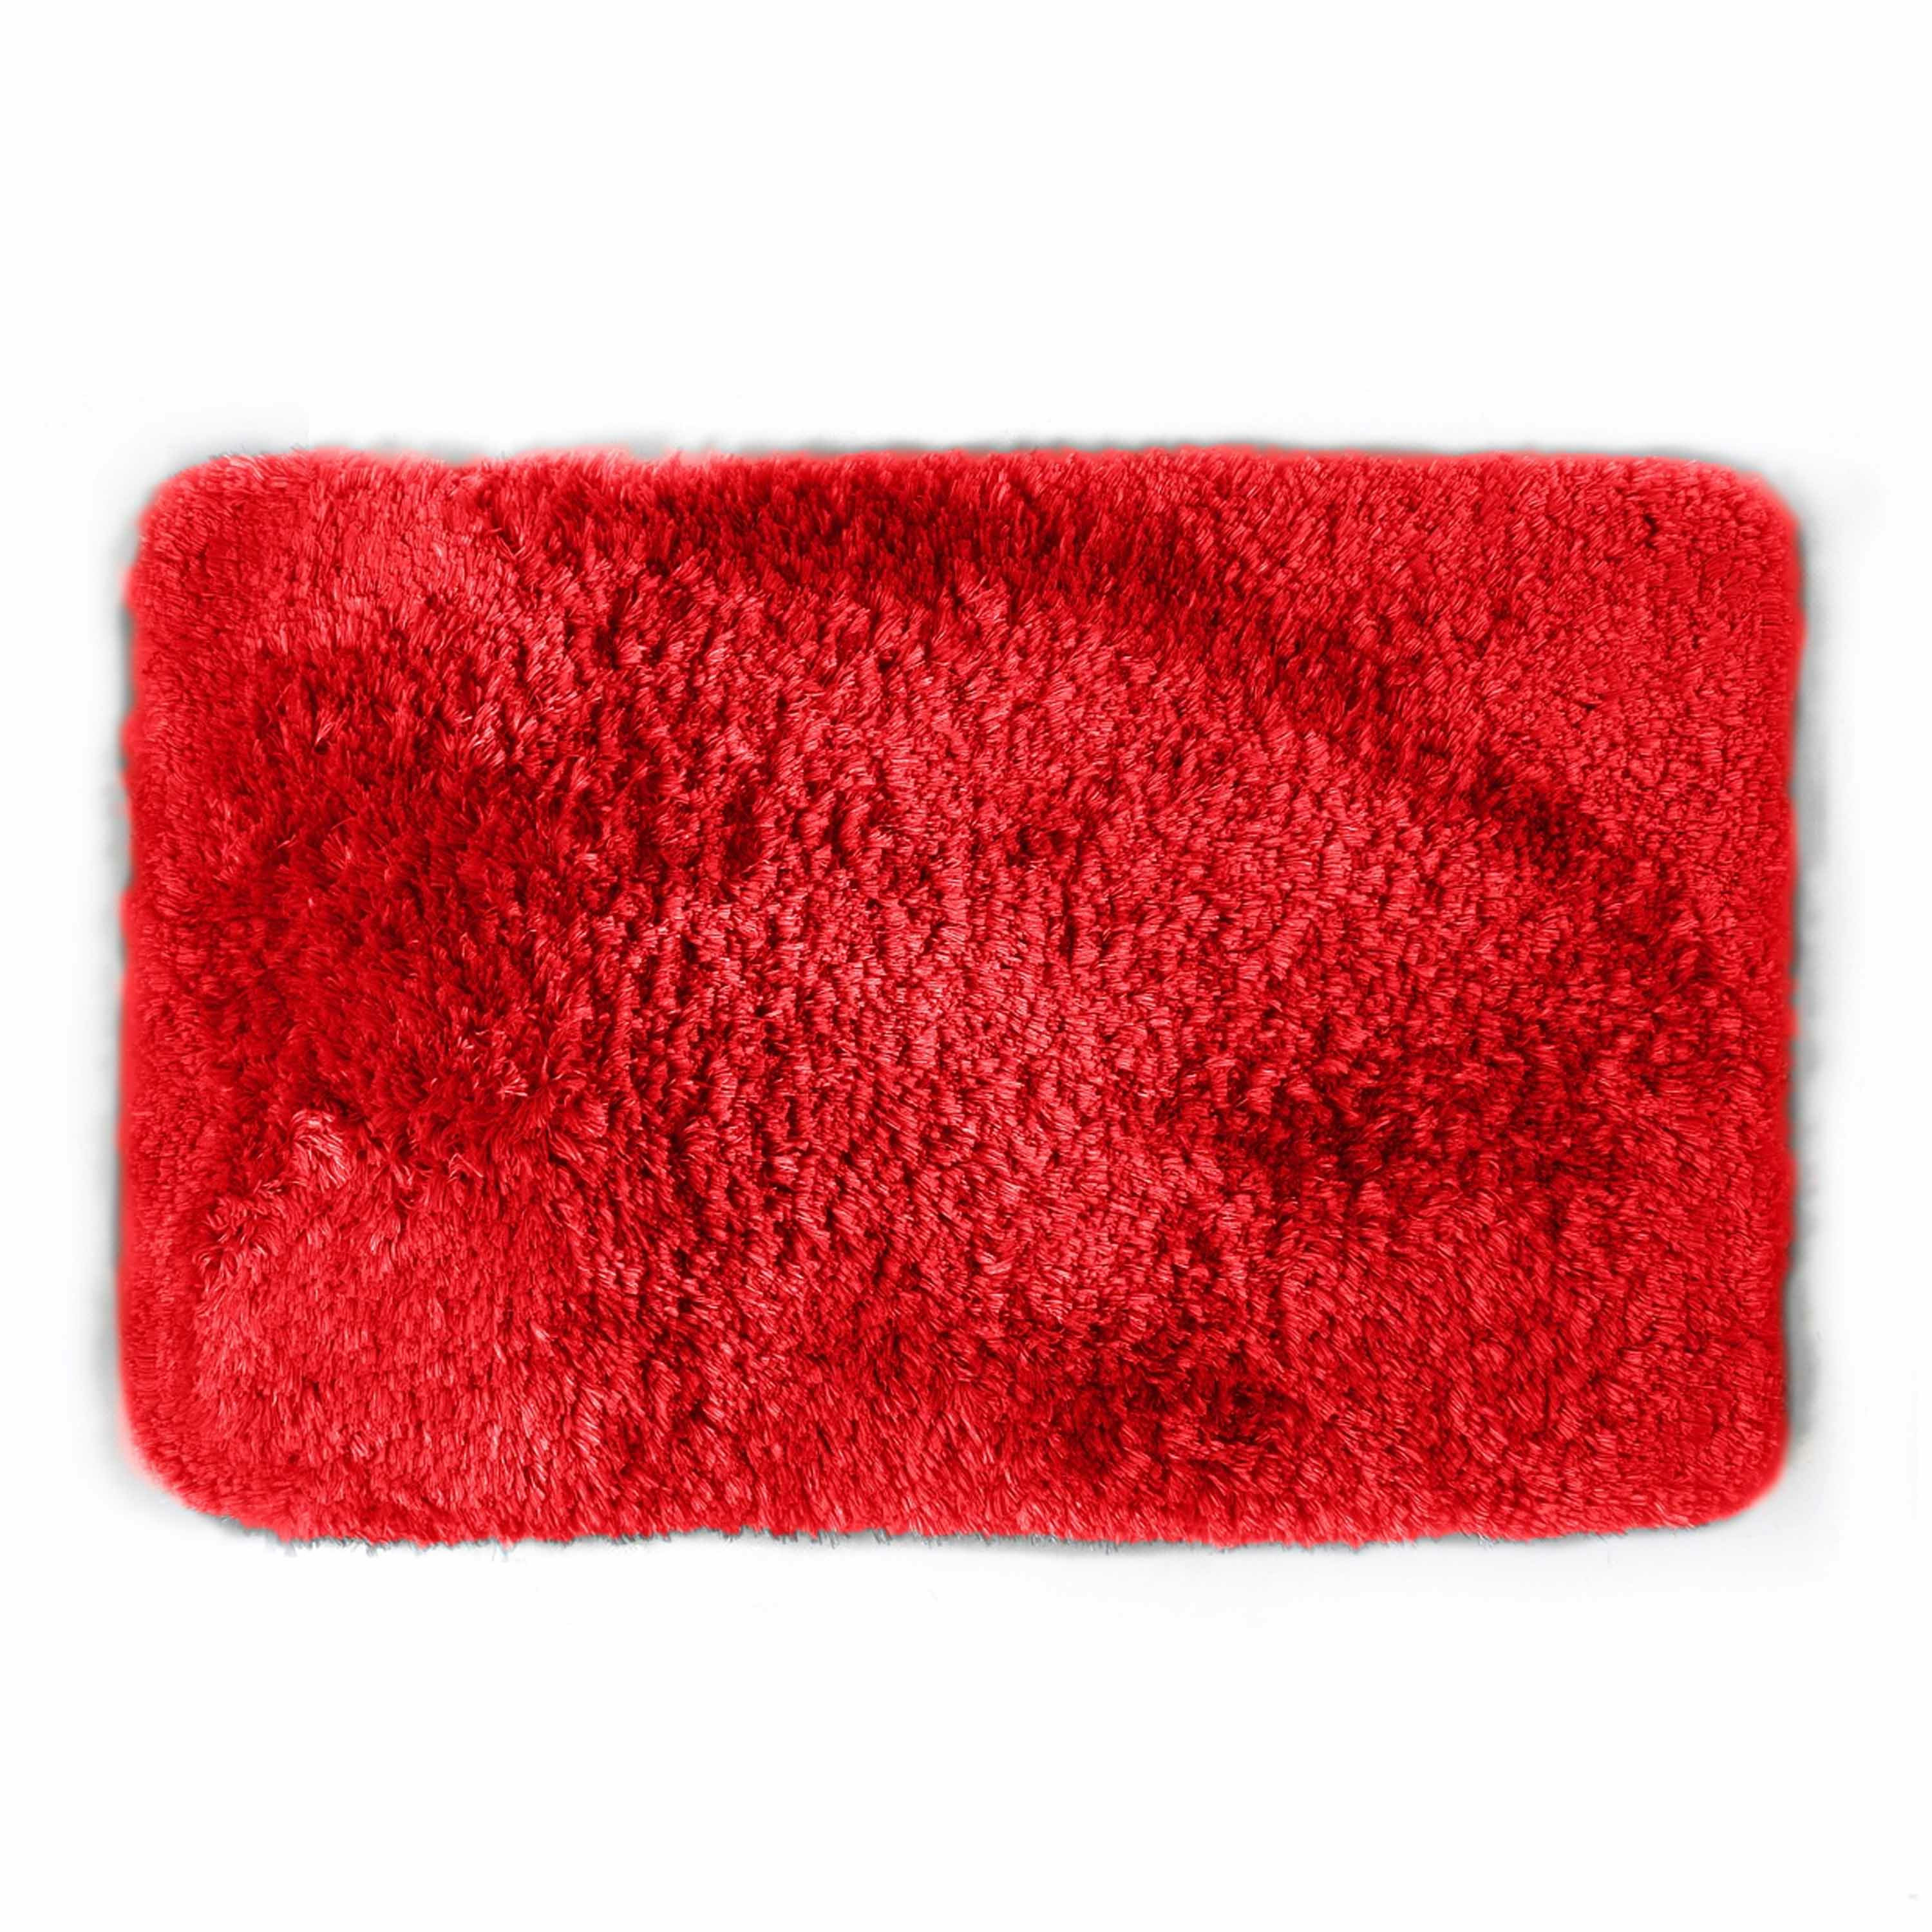 Spirella badkamer vloer kleedje-badmat tapijt hoogpolig luxe uitvoering rood 40 x 60 cm